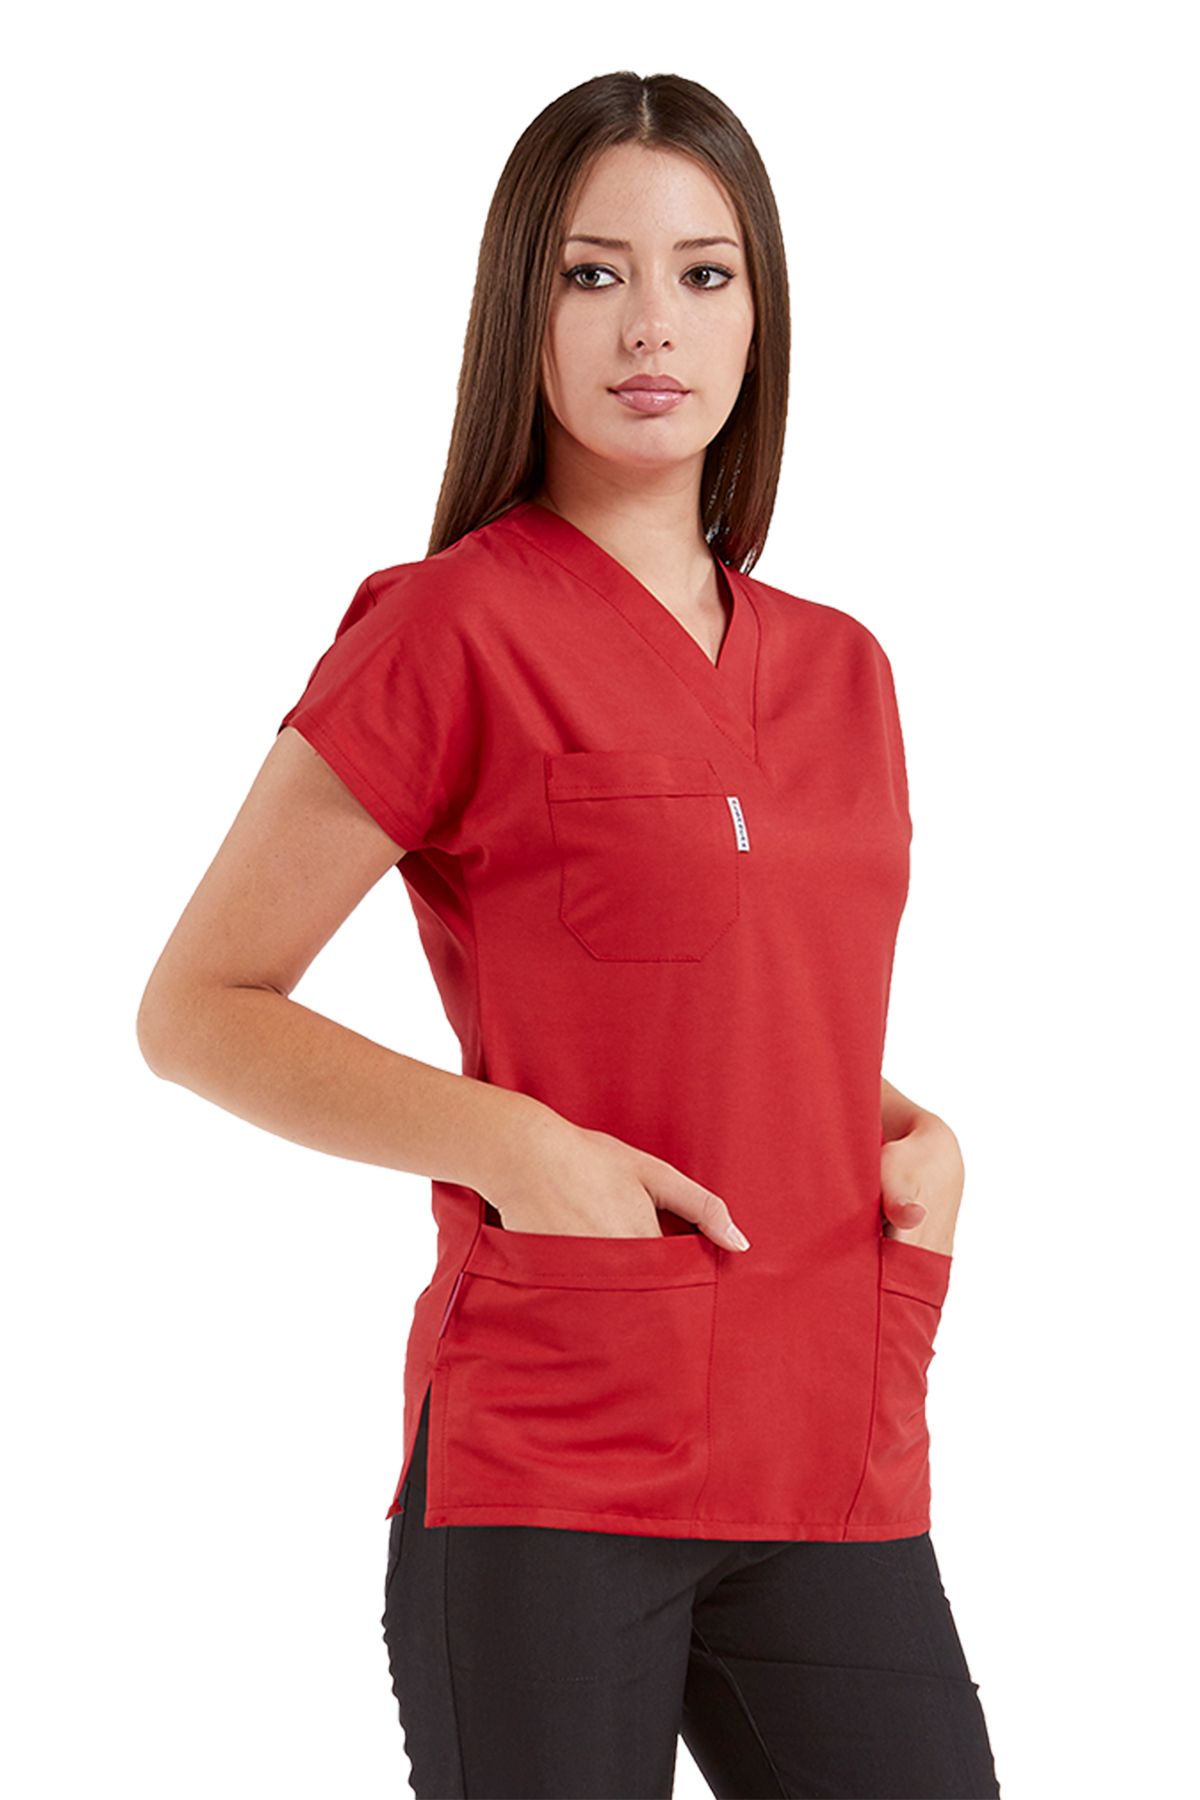 Alsancak Üniforma Scrubs Flex Likralı Kırmızı/Siyah İnce Kumaş Yarasa Kol Cerrahi Doktor Hemşire Forması Takımı